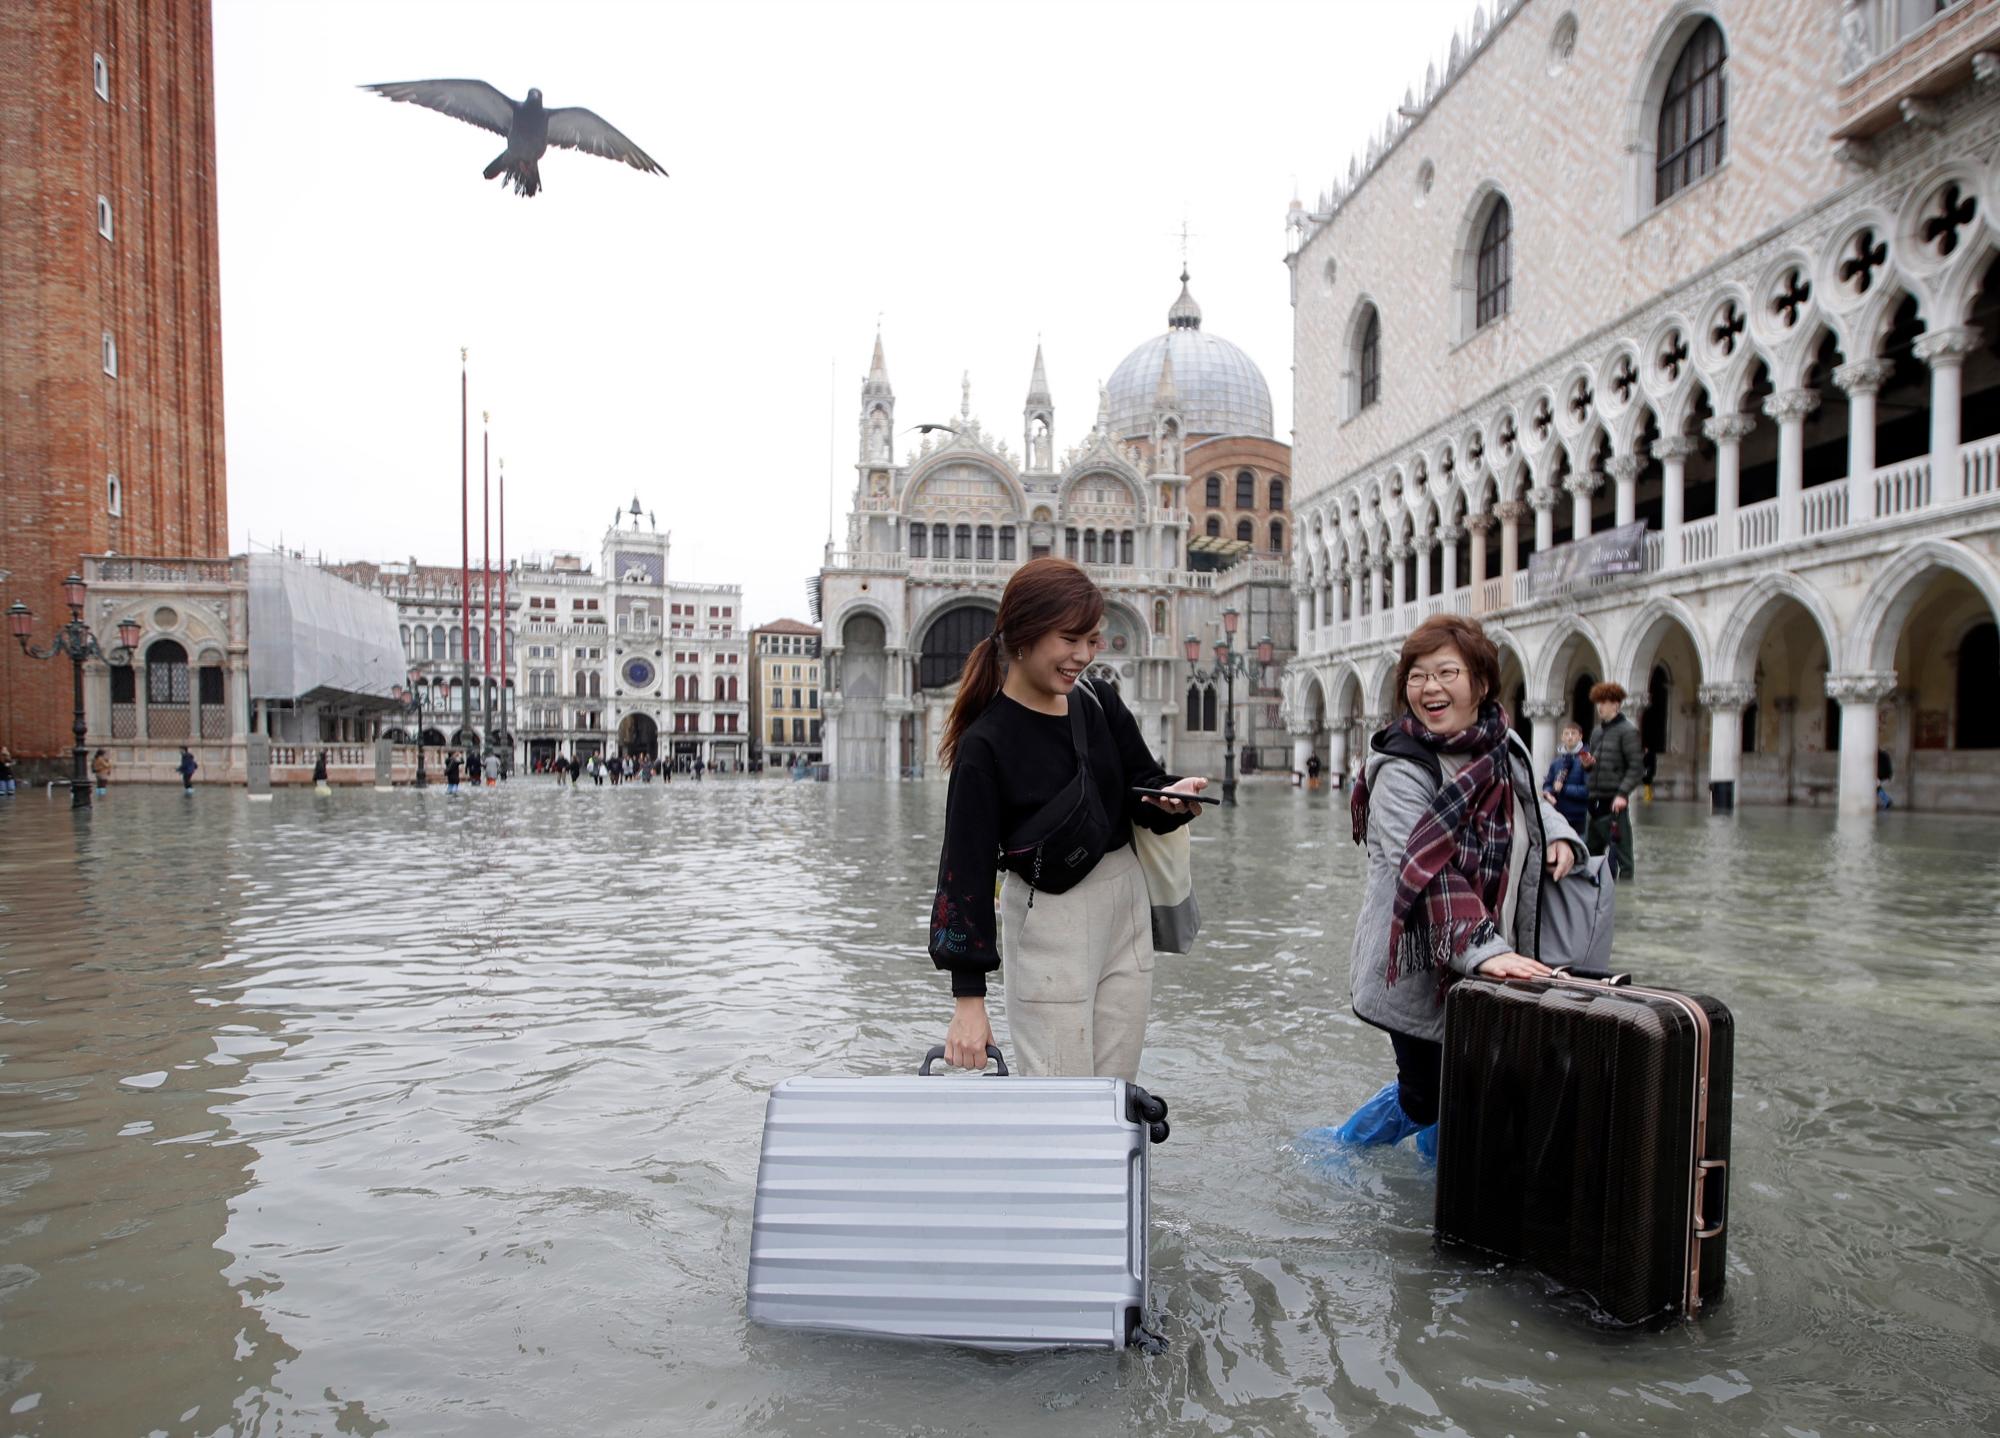 Los turistas empujan su equipaje en la inundada Plaza de San Marcos, en Venecia, el miércoles 13 de noviembre de 2019. La marca de la marea alta golpeó 187 centímetros (74 pulgadas) la noche del martes 12 de noviembre de 2019, lo que significa más del 85% de La ciudad se inundó. El nivel más alto jamás registrado fue de 194 centímetros (76 pulgadas) durante las inundaciones infames en 1966. 